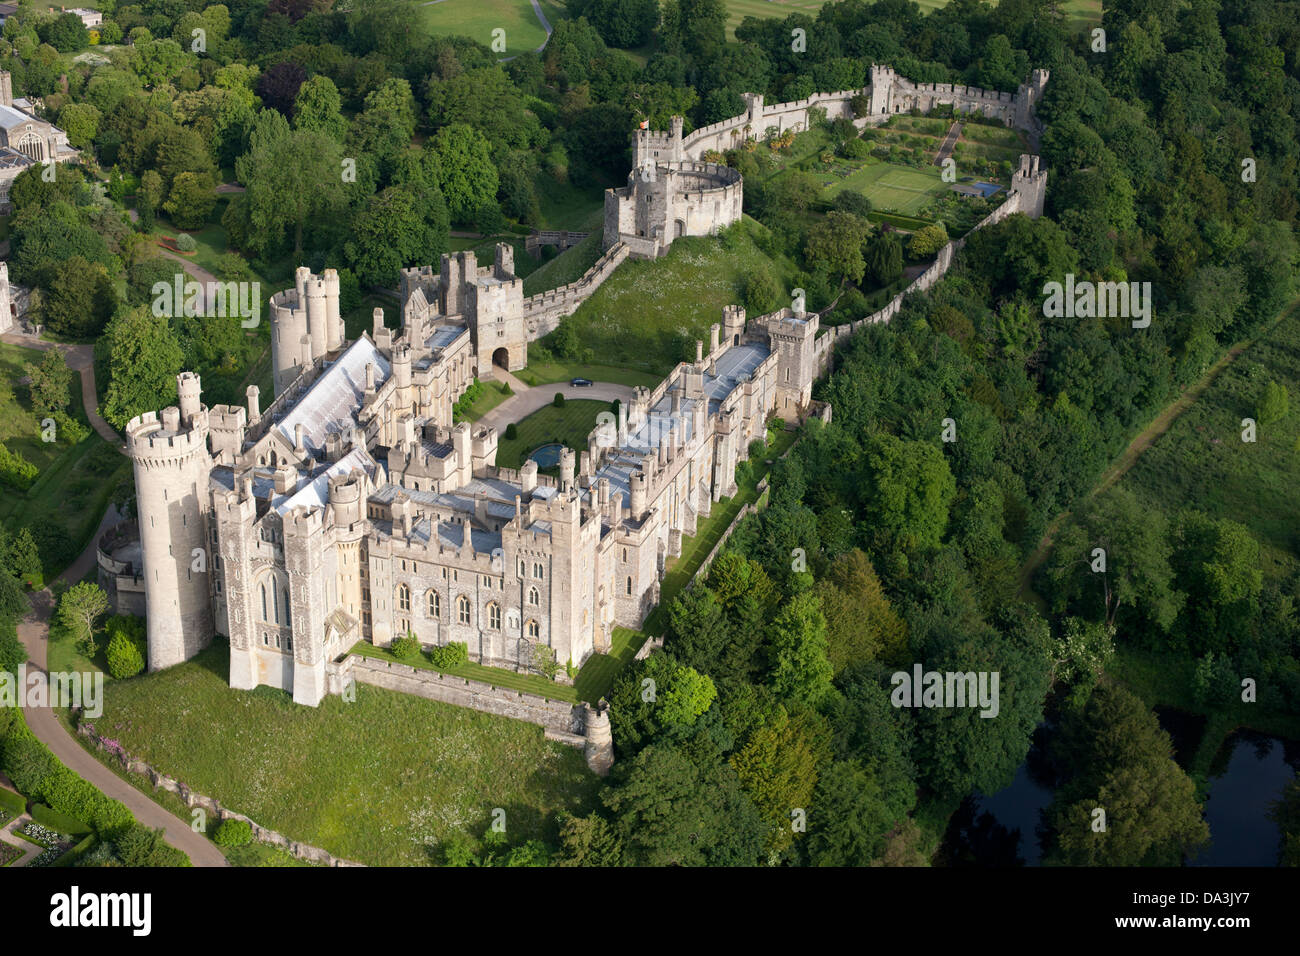 LUFTAUFNAHME. Mittelalterliche Burg von Arundel. West Sussex, England, Großbritannien, Vereinigtes Königreich. Stockfoto